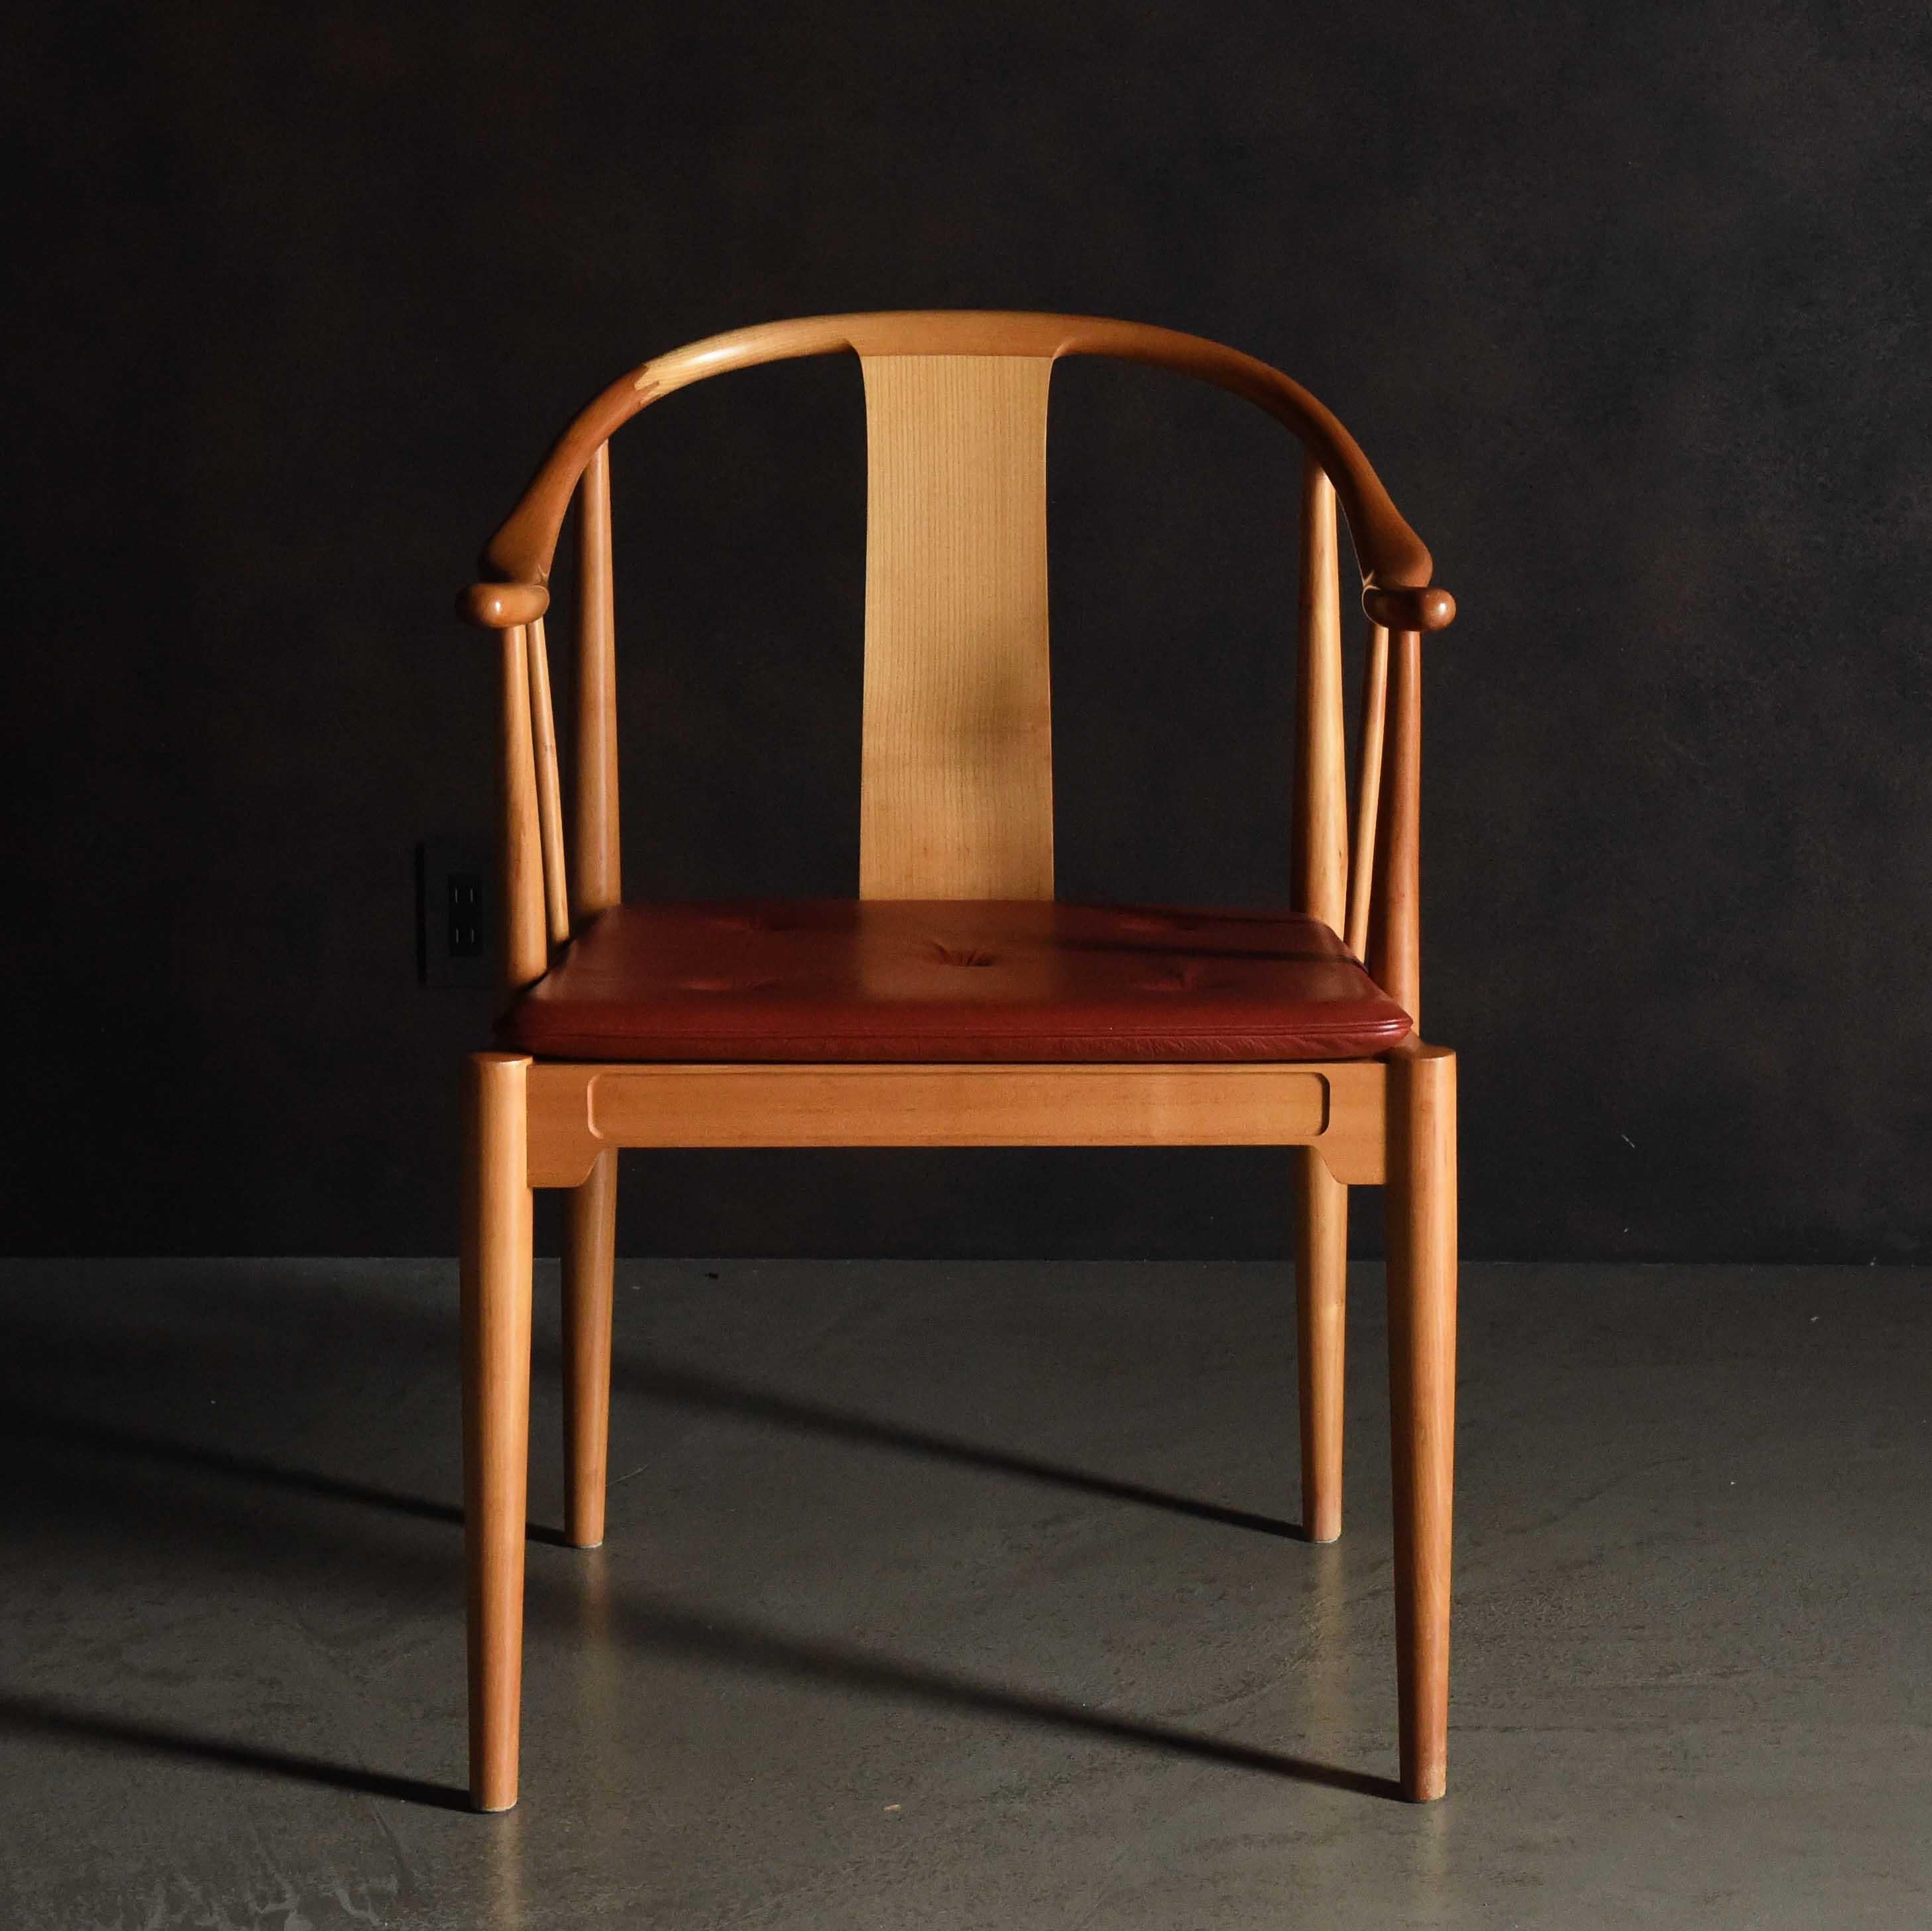 La China Chair est la seule chaise en bois pur de la collection de Fritz Hansen. Elle s'inspire du design de la chaise 